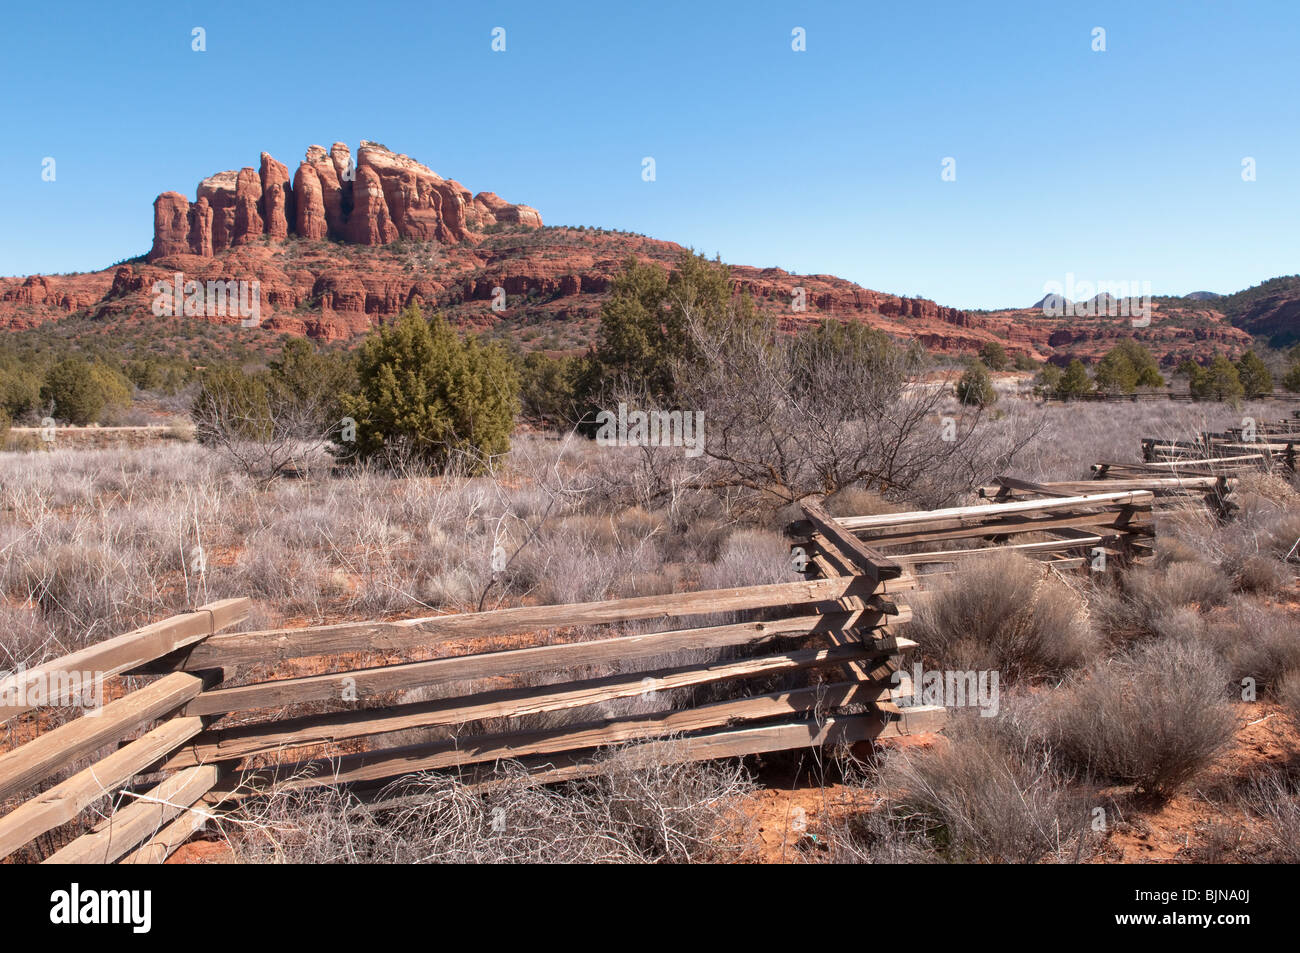 Ein Holzzaun Lager auf einer Ranch außerhalb von Sedona, Arizona. Cathedral Rocks sind in der Ferne. Stockfoto